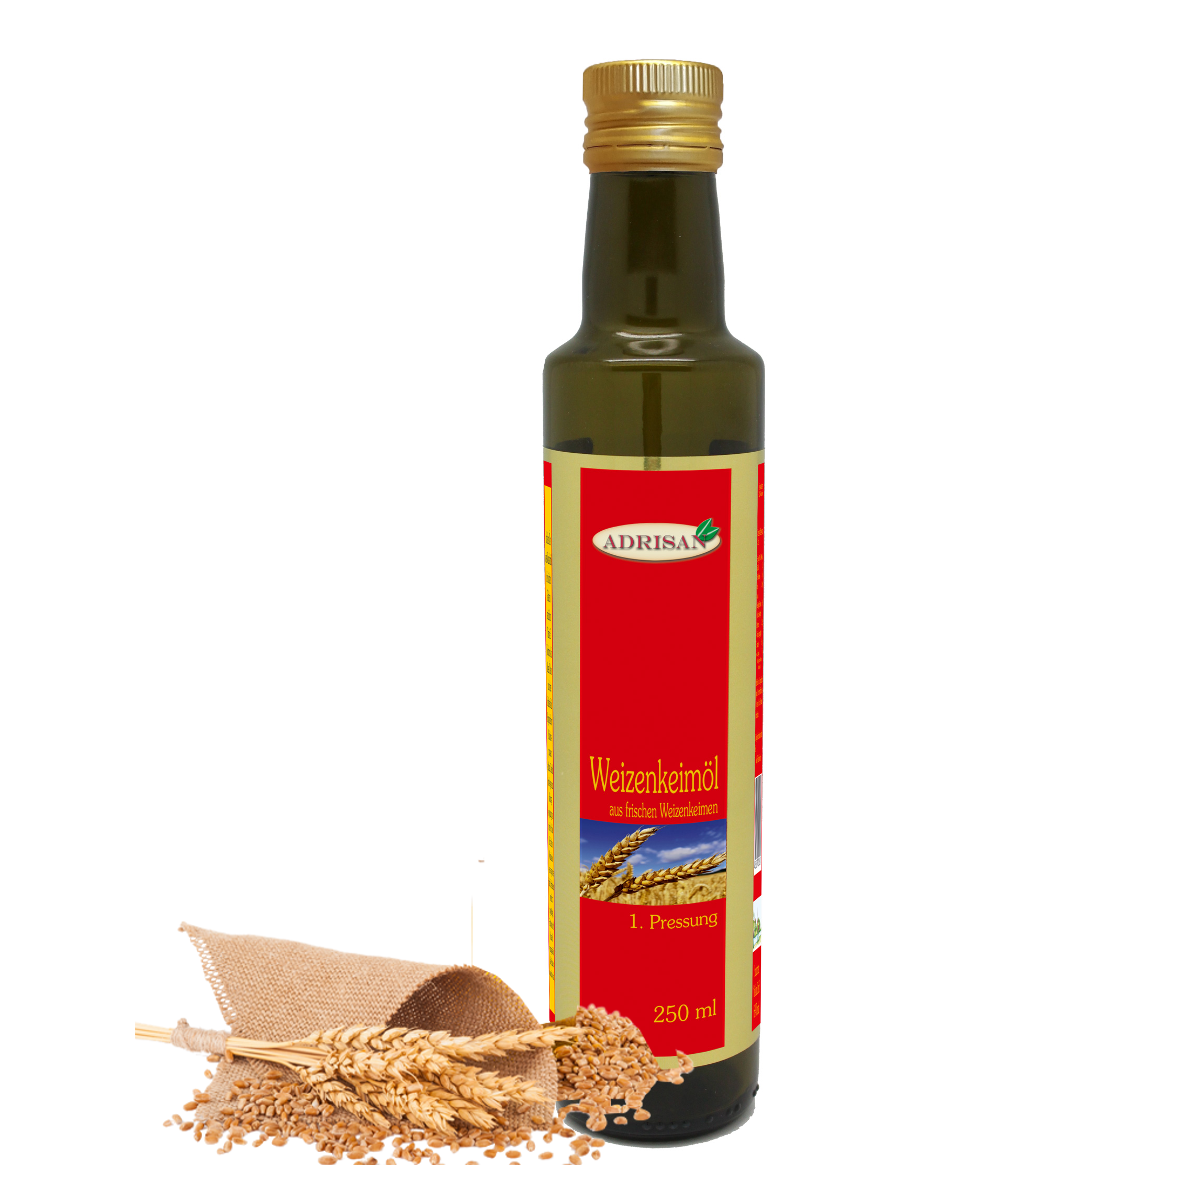 eine dunkle schlanke Flasche mit rotem Produktaufkleber steht neben liegenden Weizenähren, Weizenkeimöl